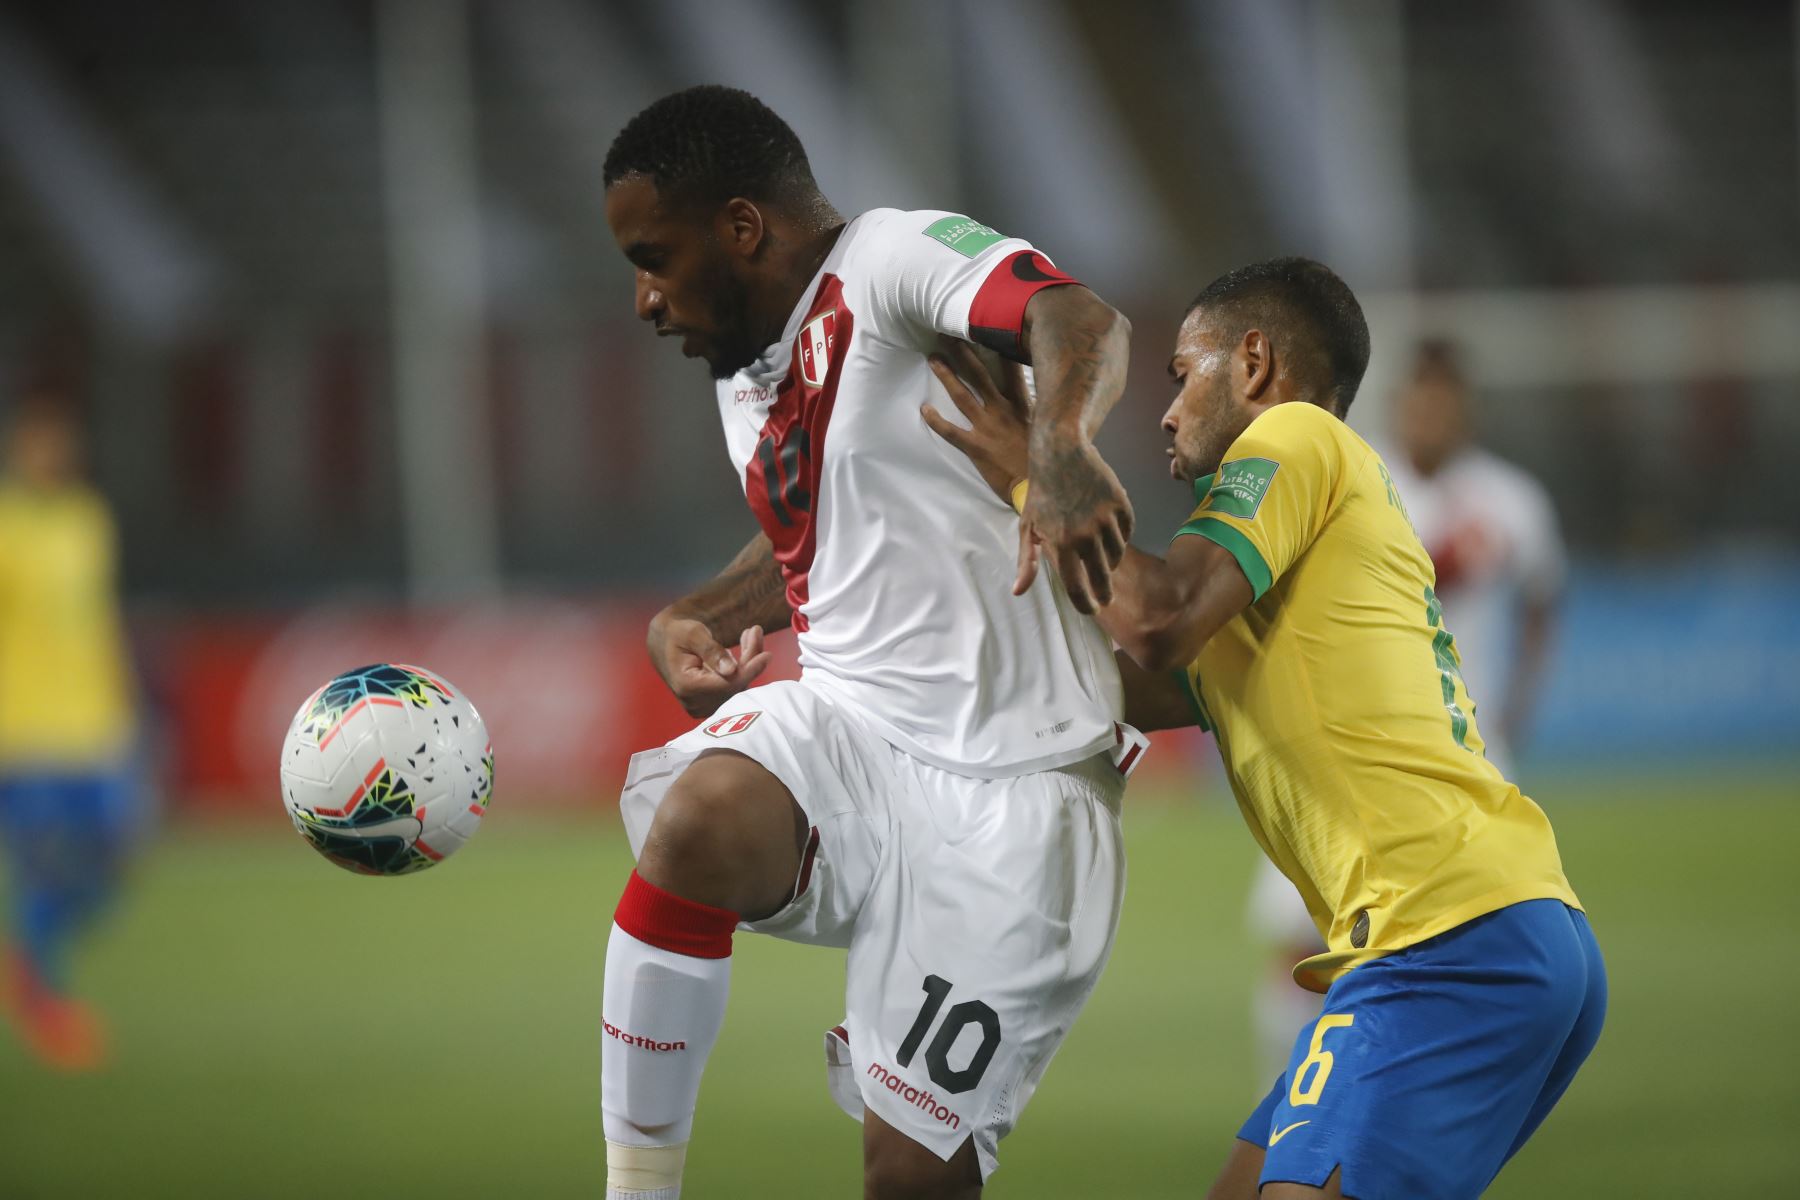 Perú enfrenta a brasil por la segunda fecha de las eliminatorias rumbo a Qatar 2022. Jefferson Farfán capitán de la selección en disputa del balón con marcador brasilero.

Foto: Pool/FPP